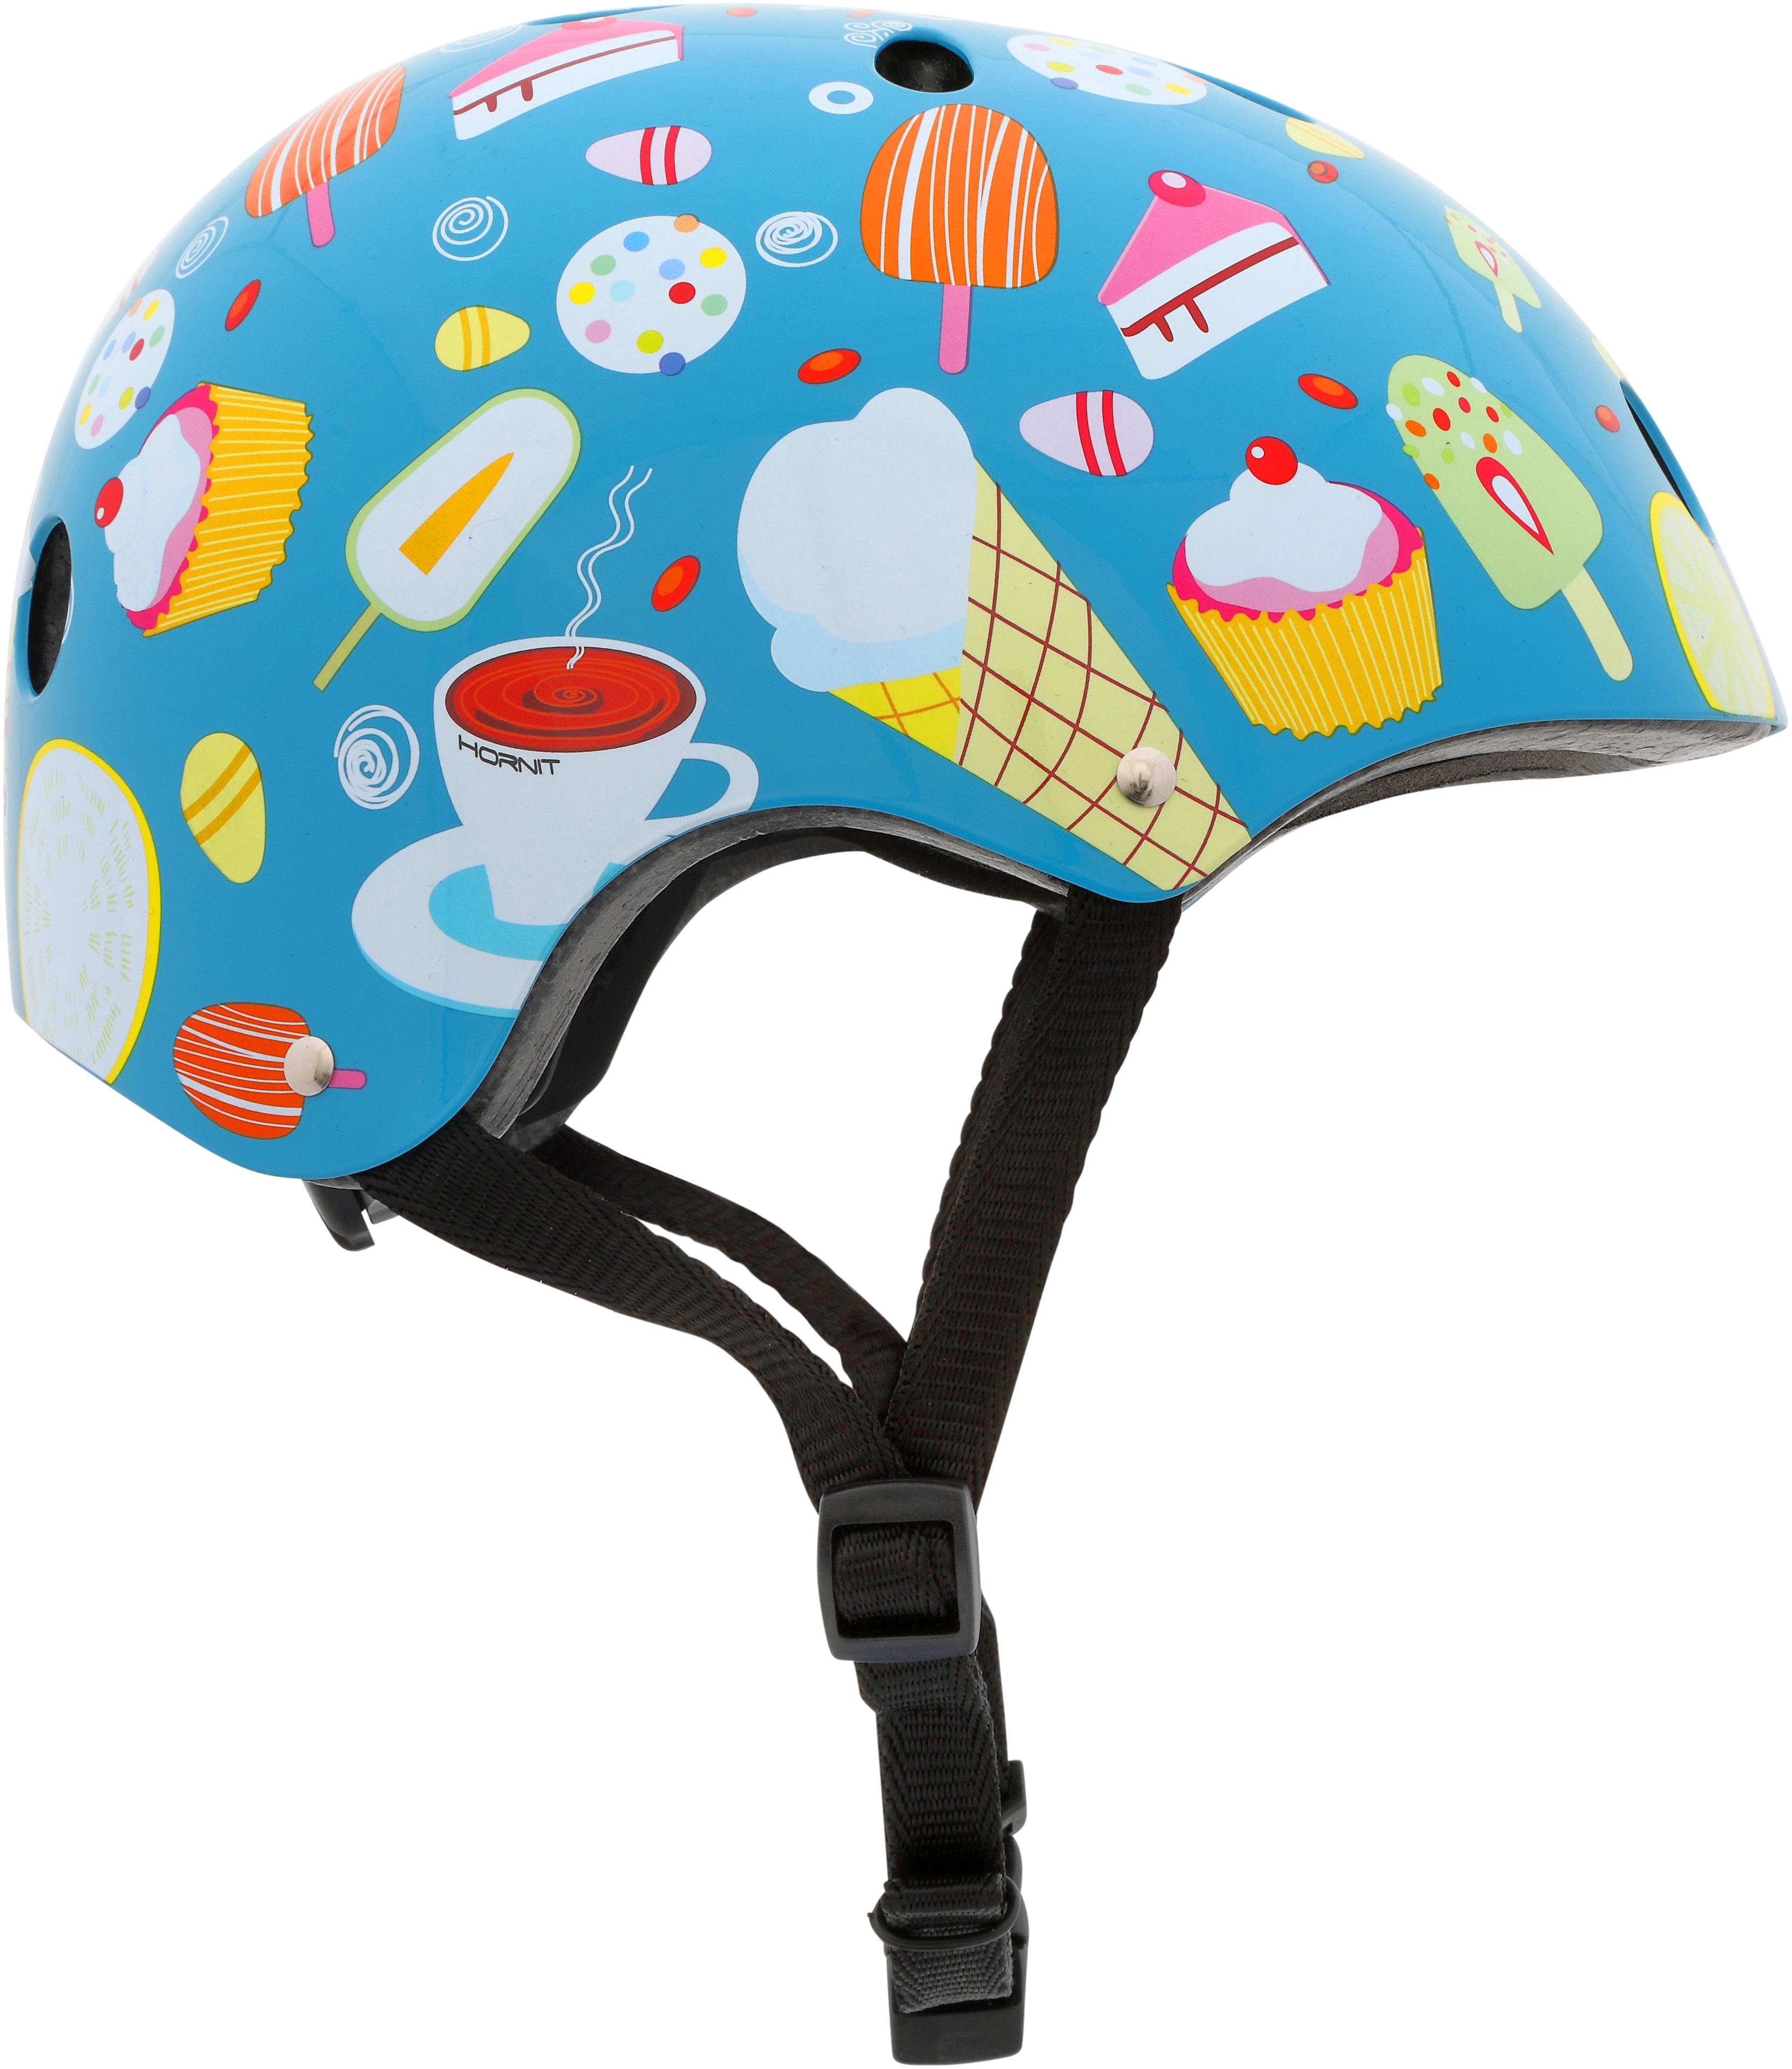 hornit mini child helmet